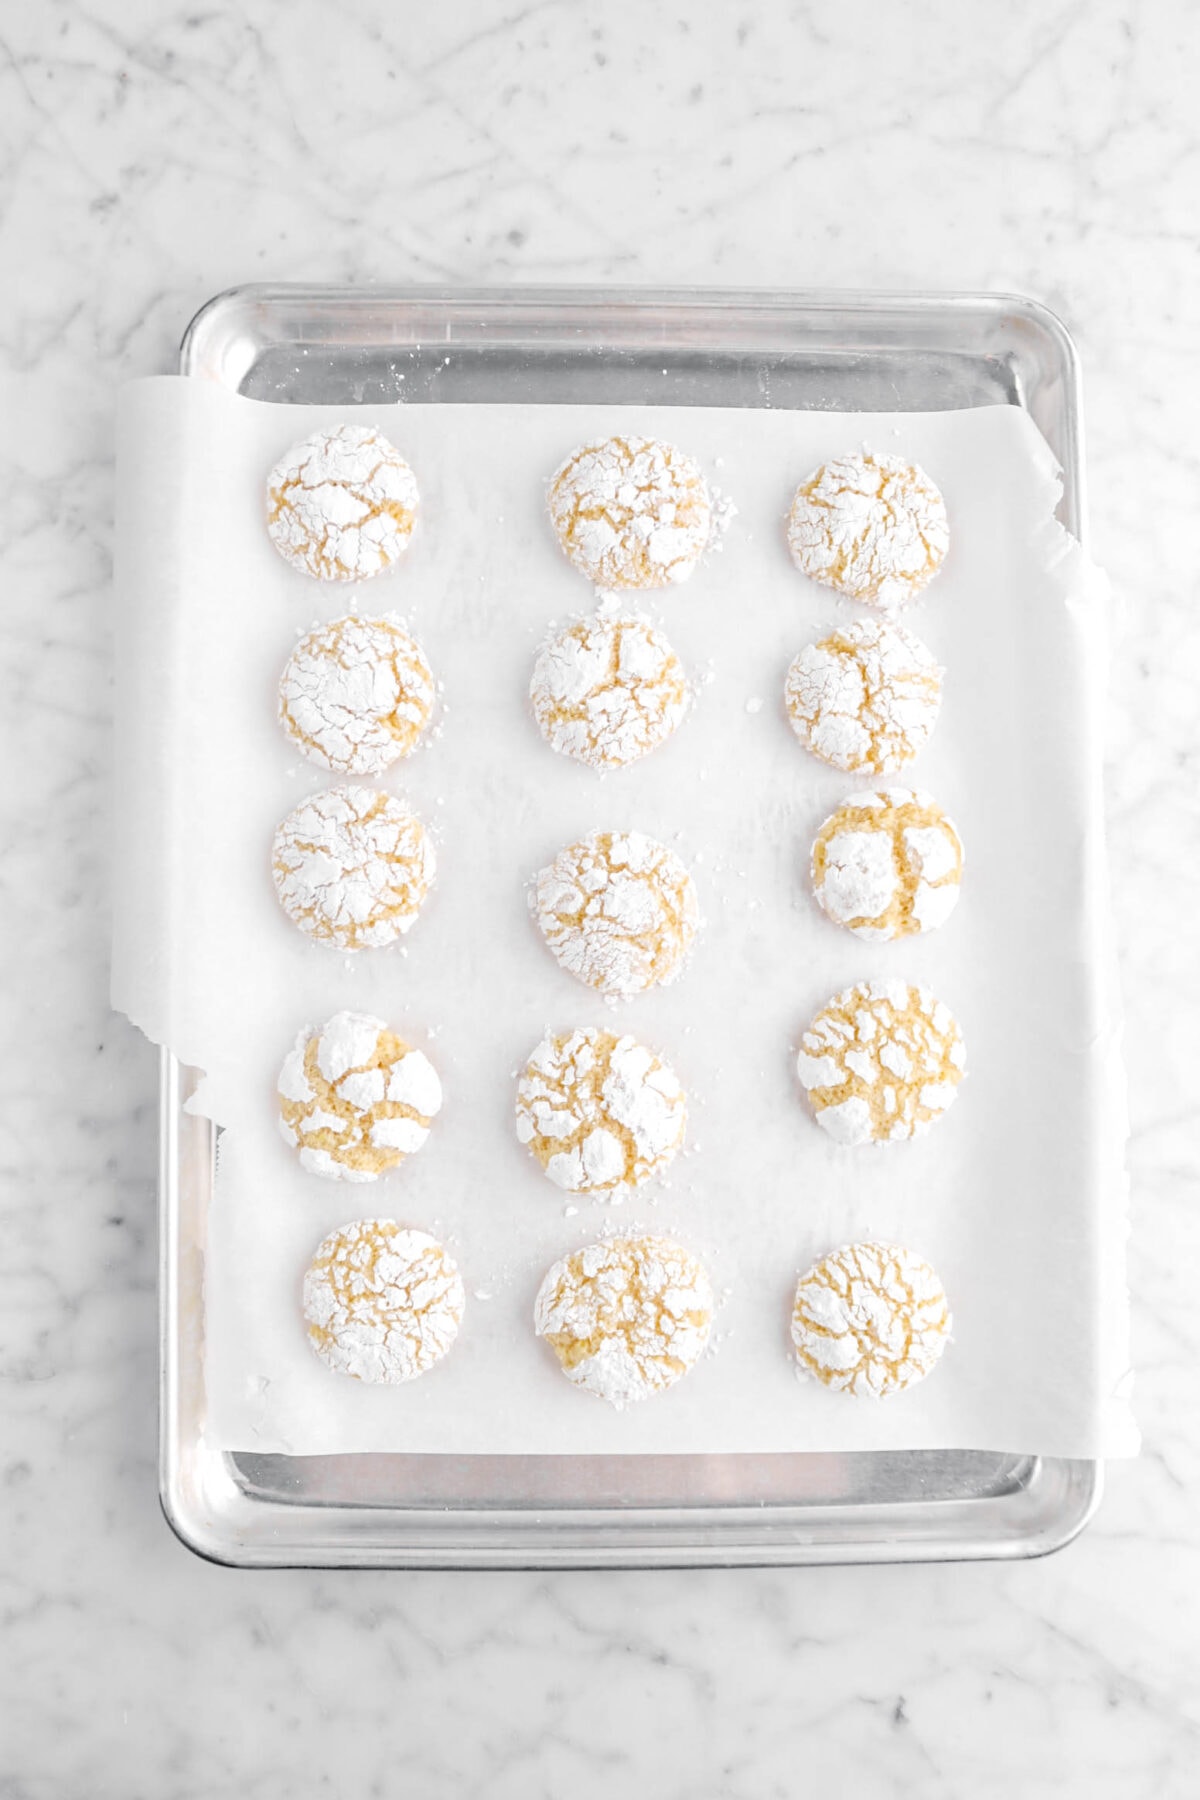 baked lemon crinkle cookies on sheet pan